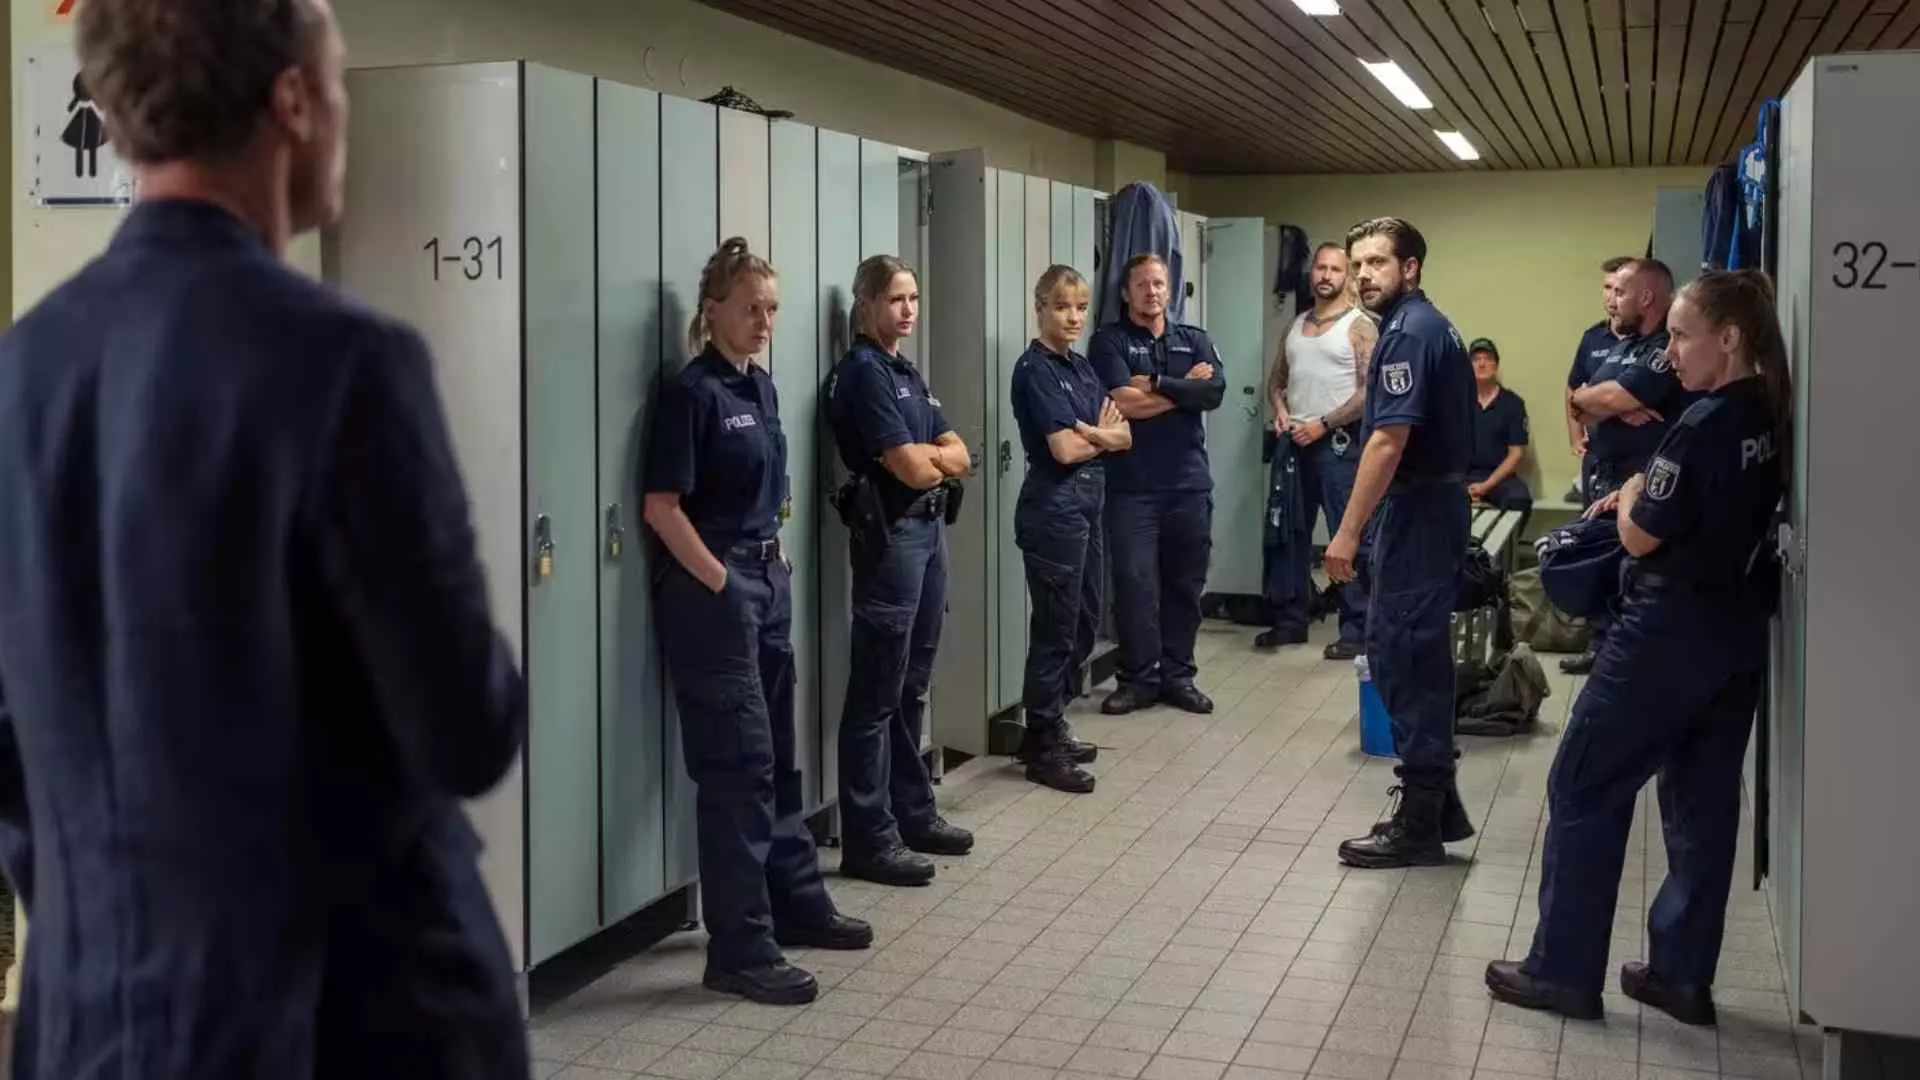 بازرسی در حال سوال پرسیدن از ماموران پلیس در سریال Tatort 